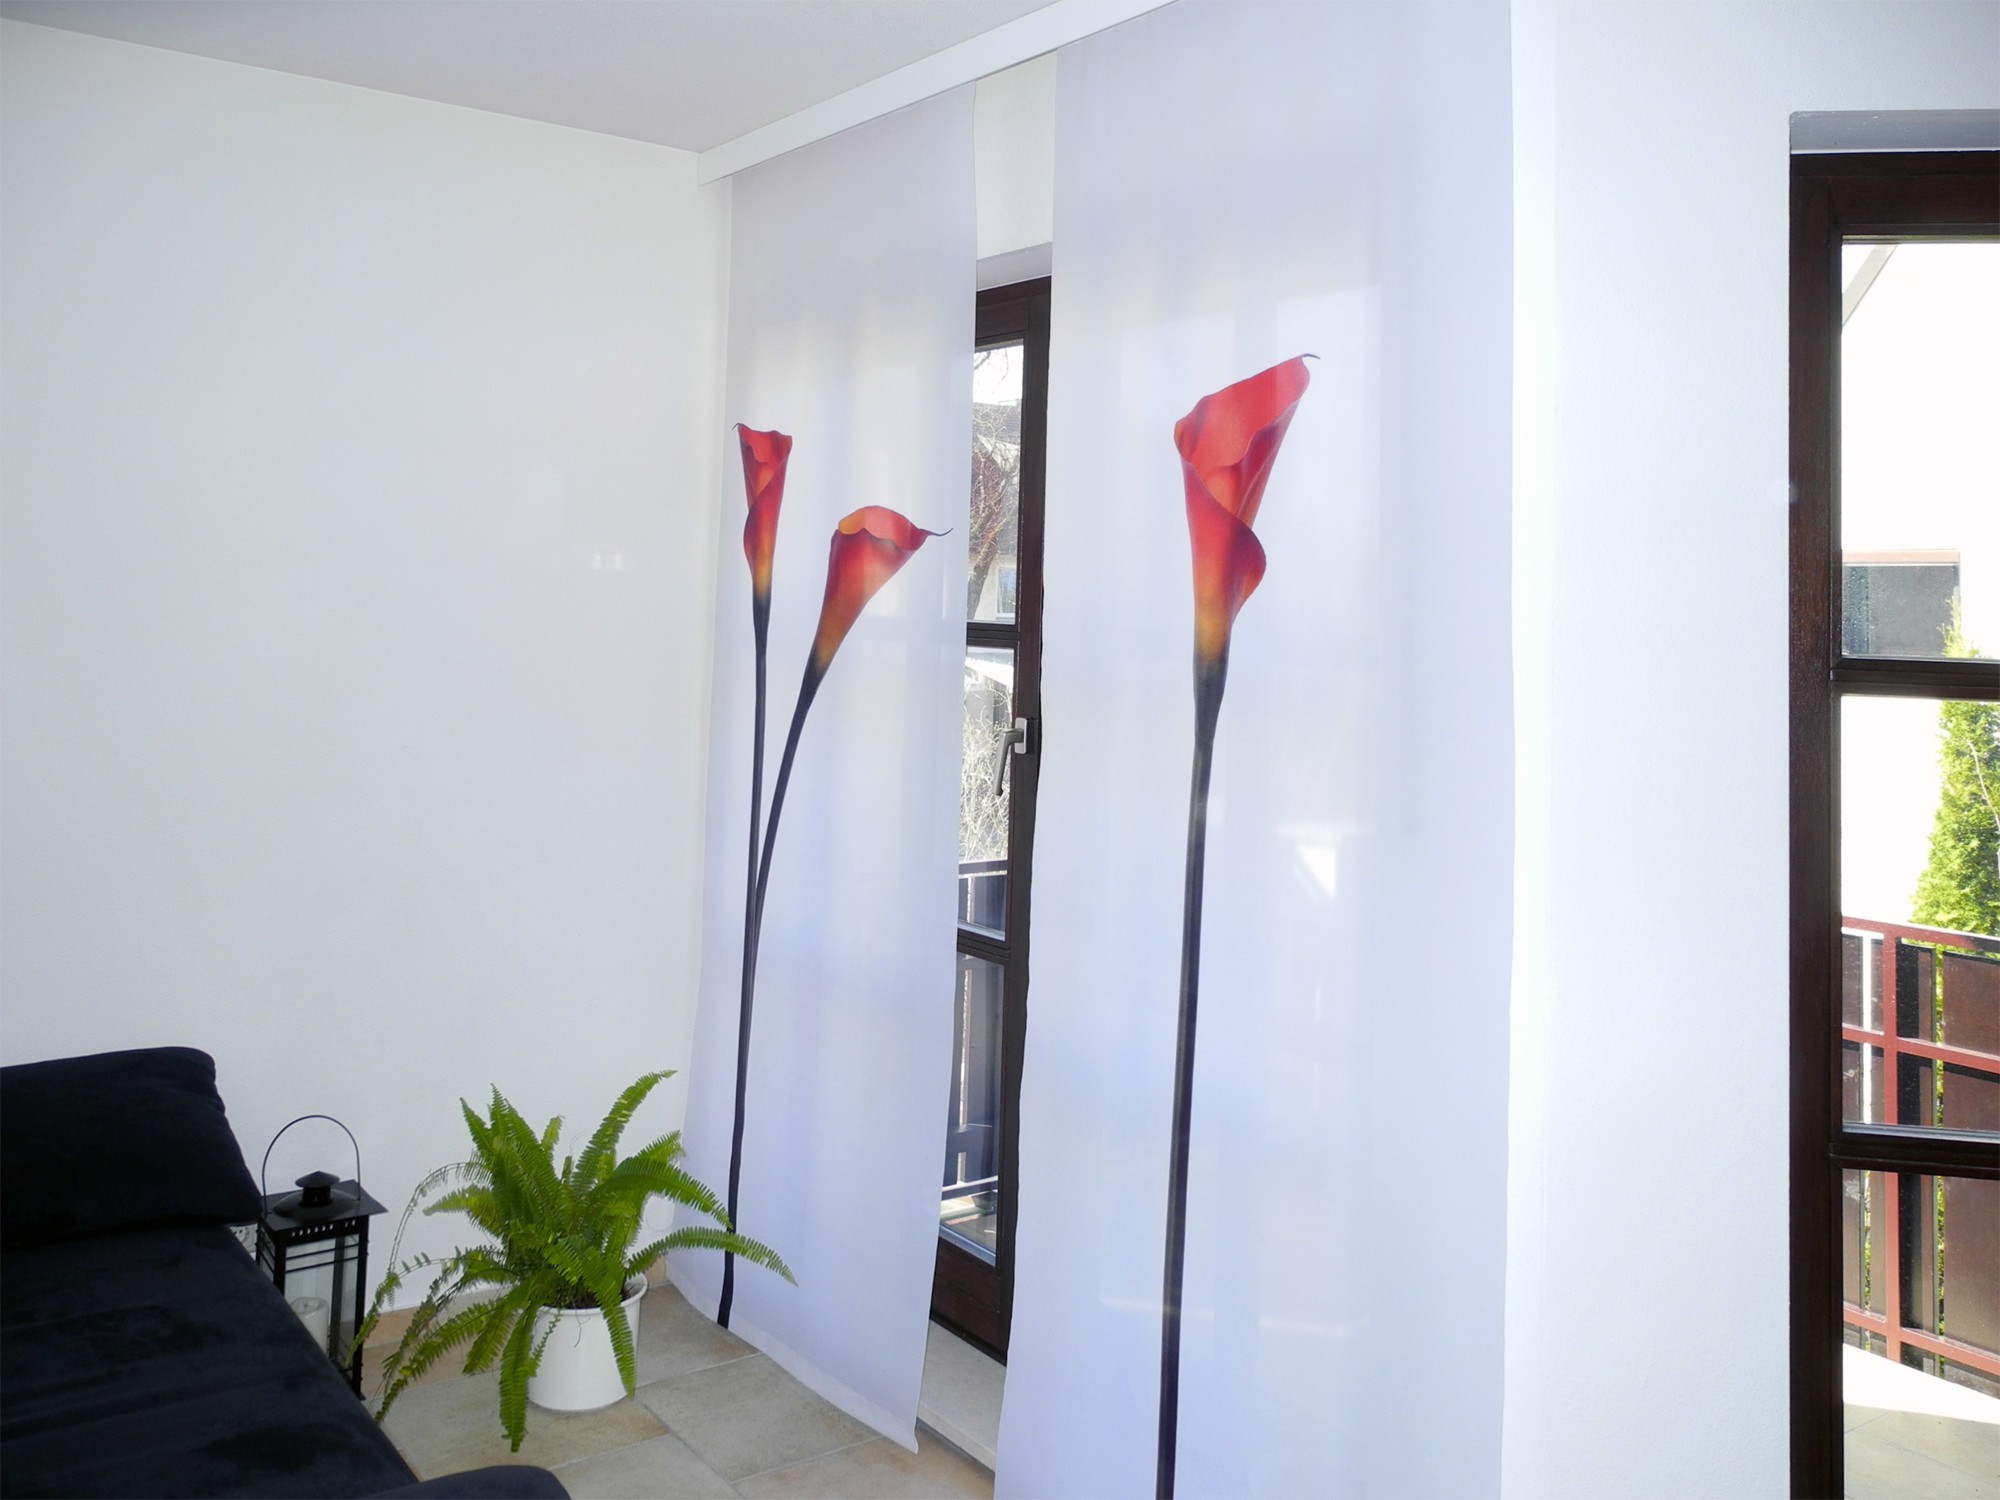 Bedruckte Vorhänge Foto Schiebegardinen Fotolamellen stilisierte Blumenmotive modernes Raumdesign